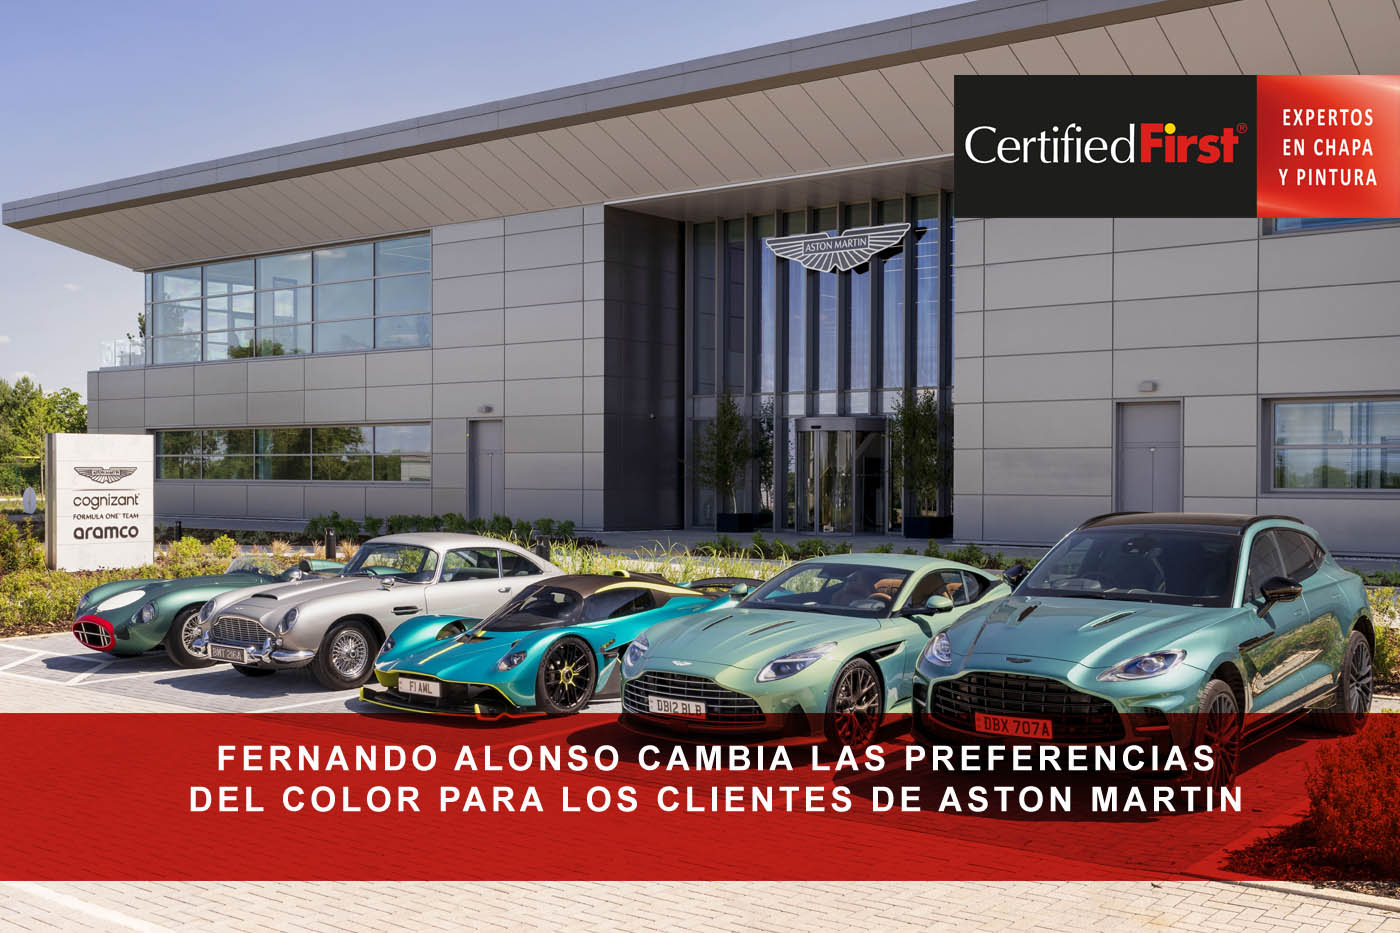 Fernando Alonso cambia las preferencias del color para los clientes de Aston Martin